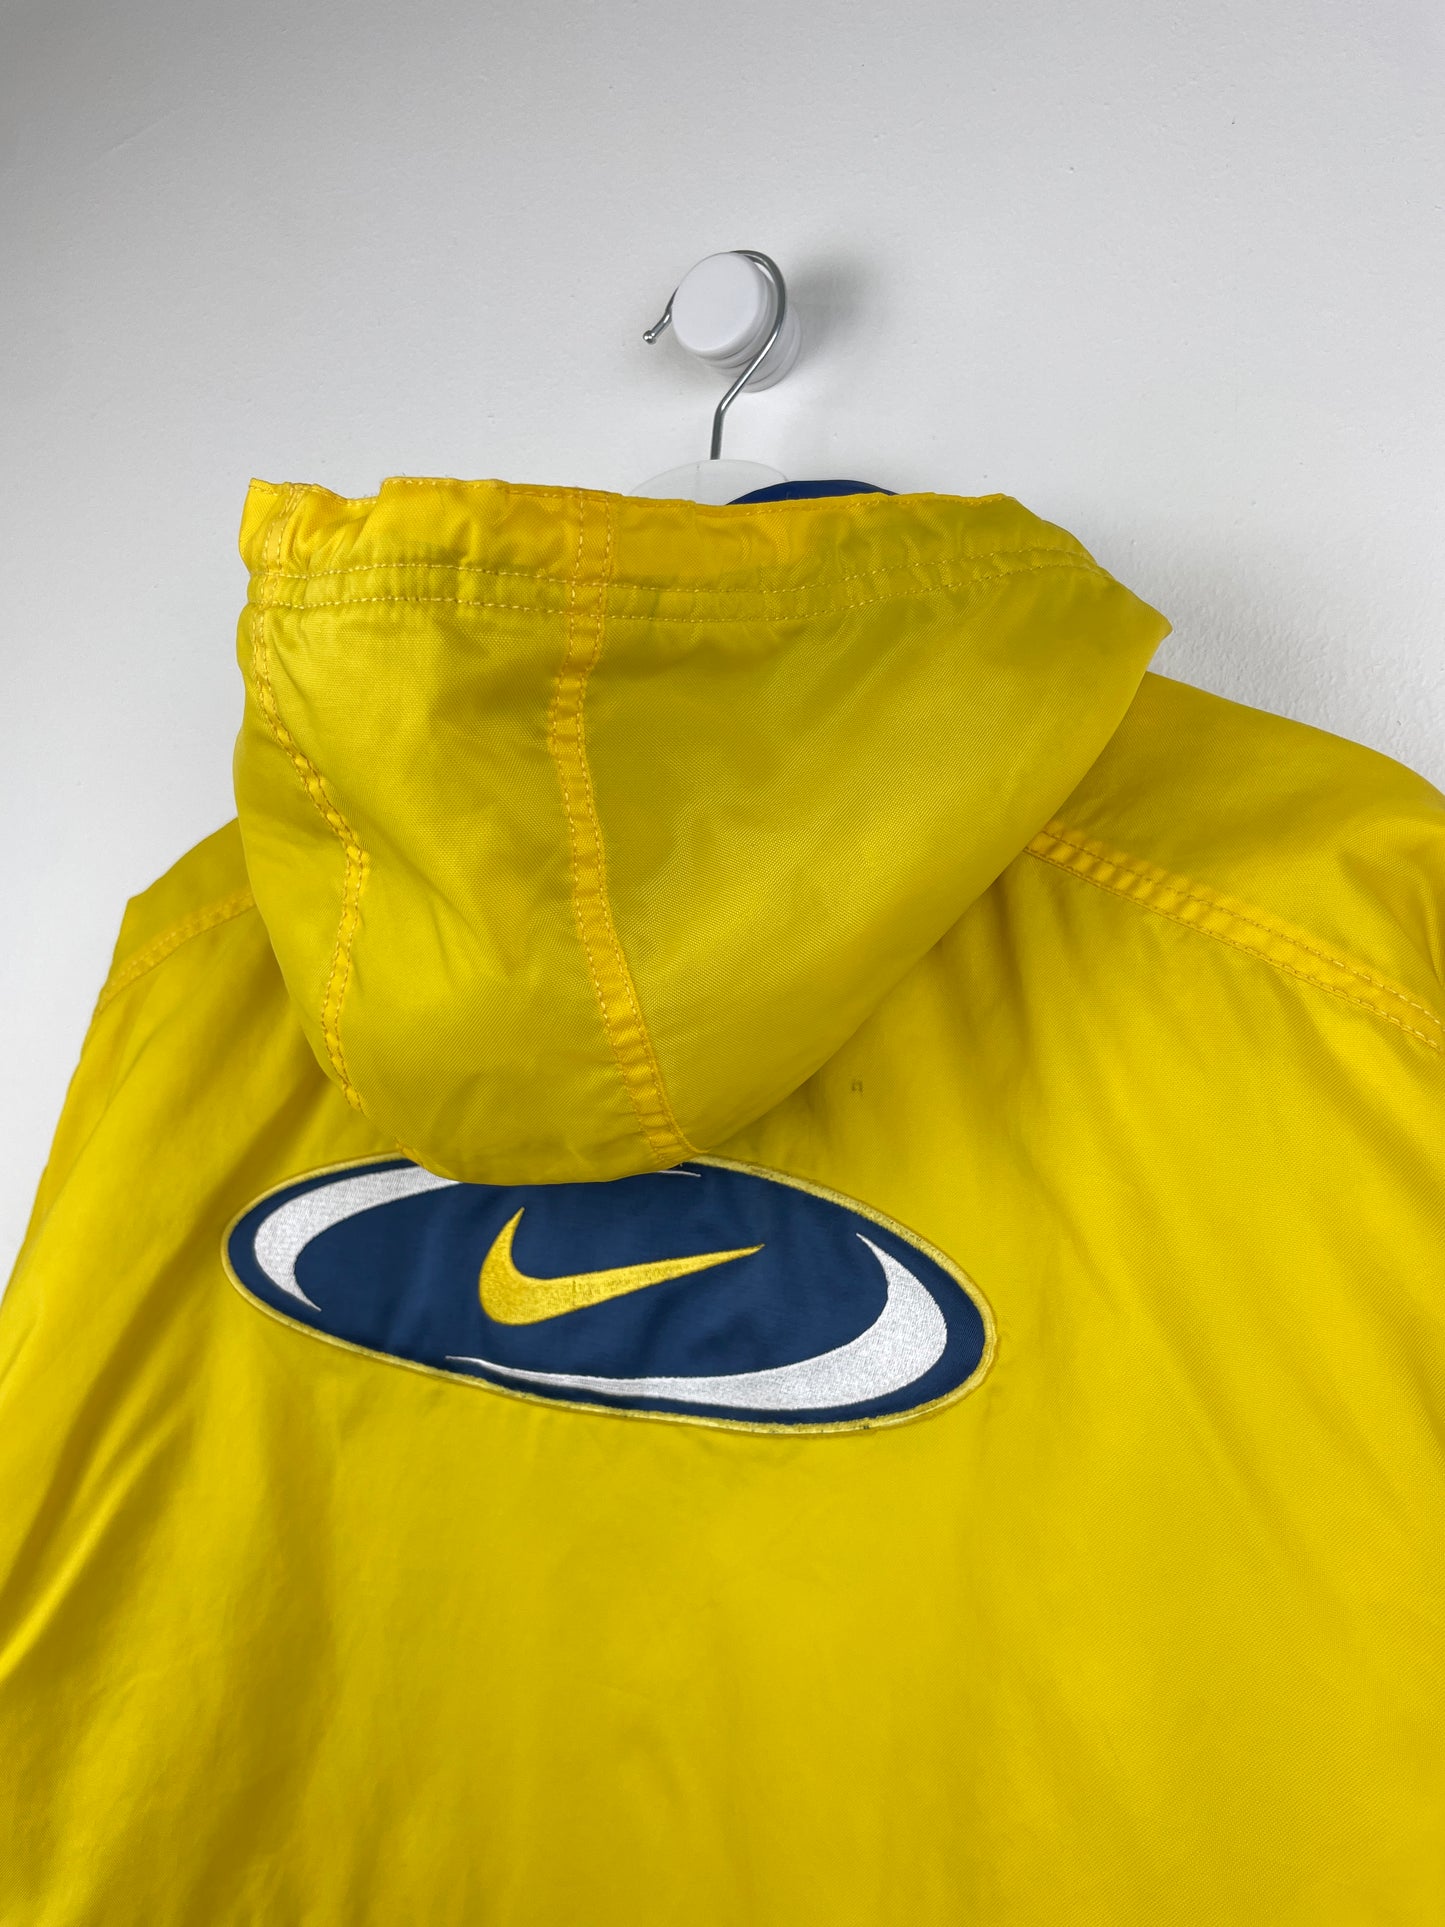 Nike Jacket